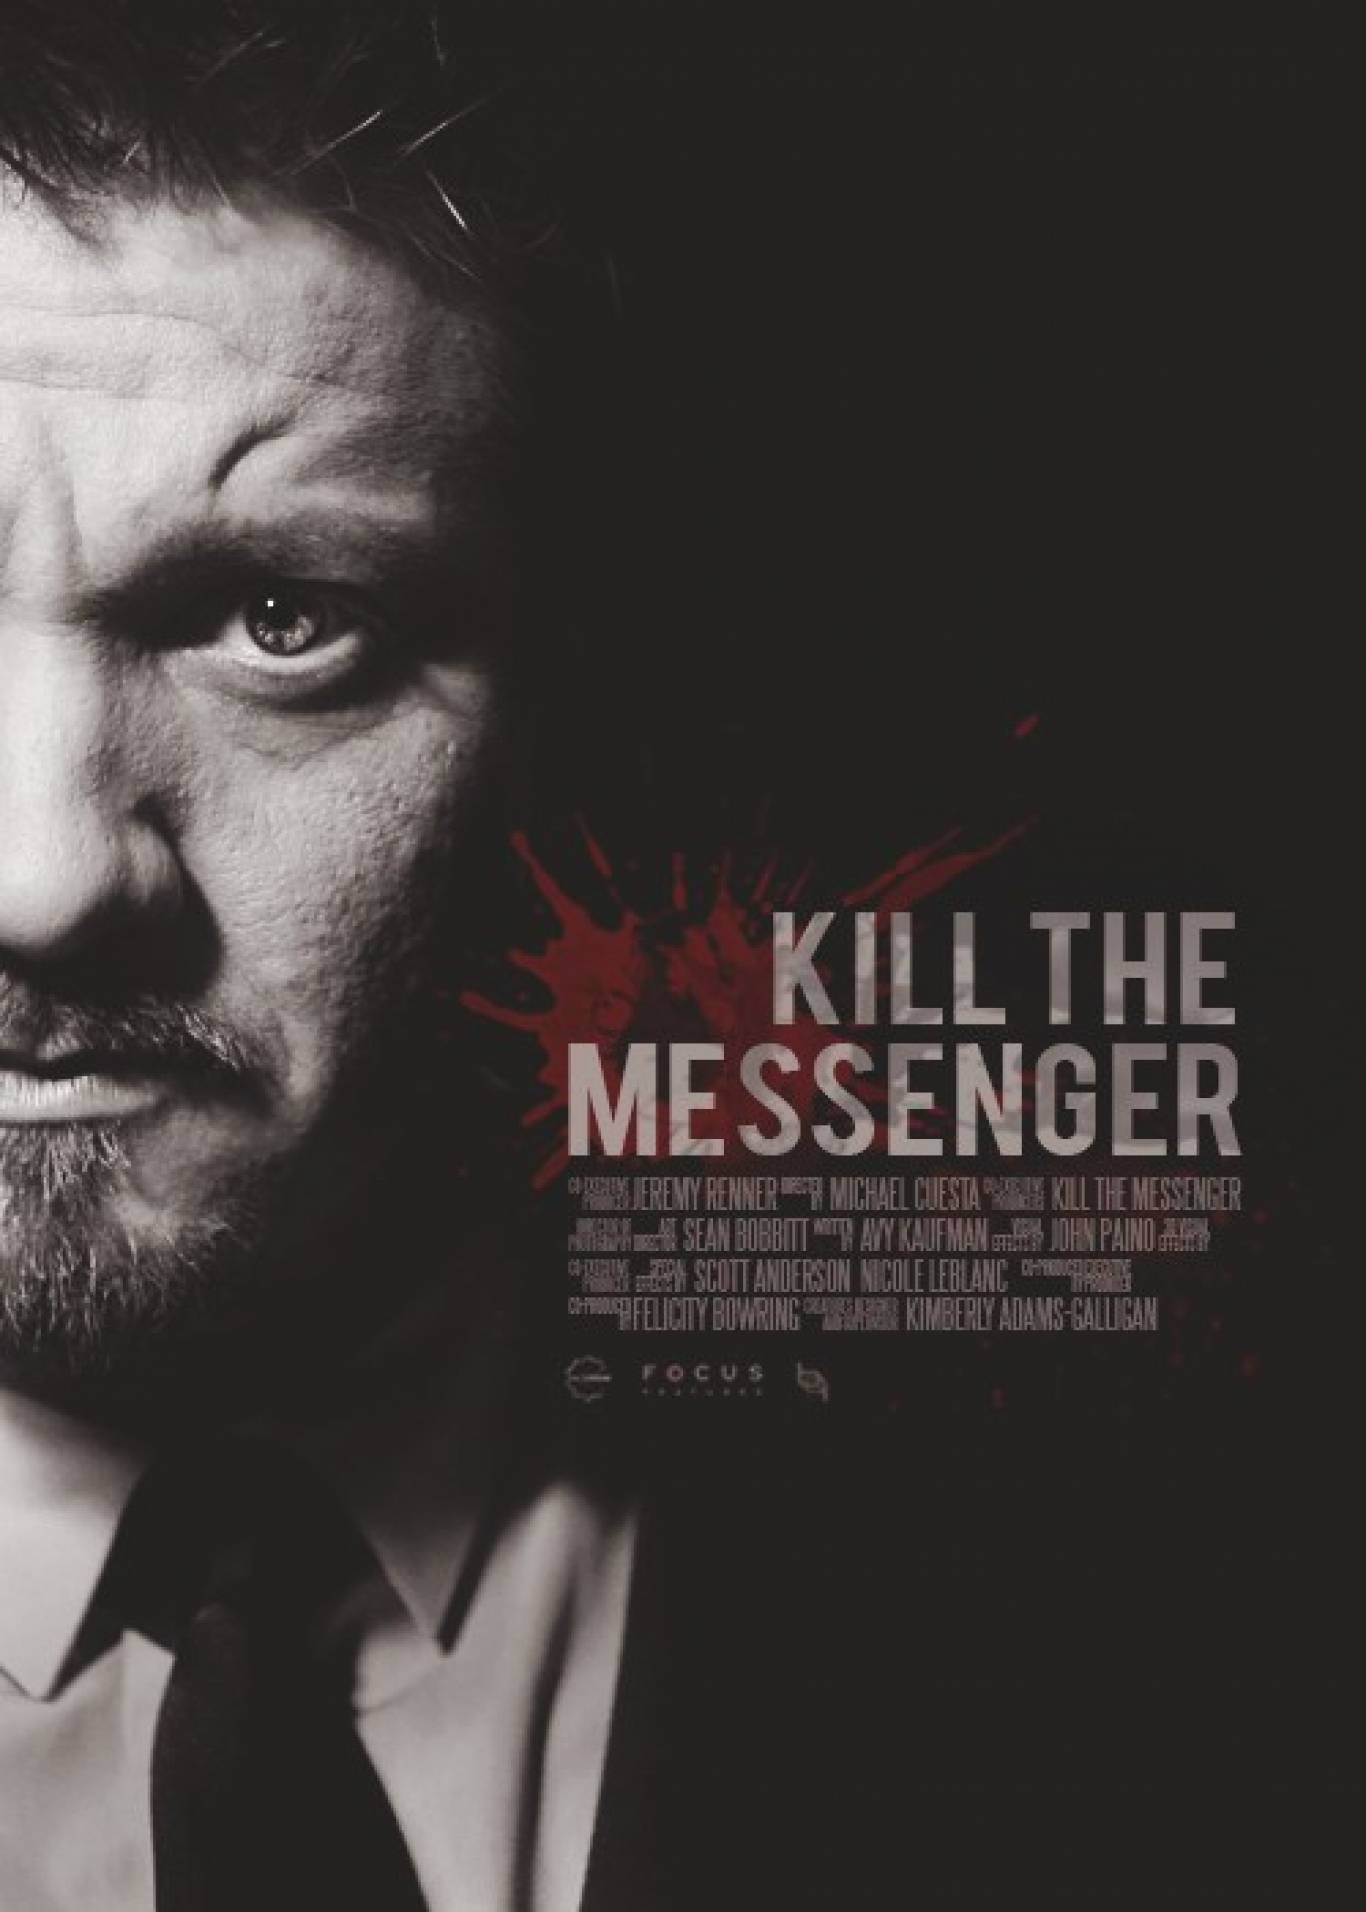 Killing the messenger. Kill the Messenger 2014 poster.